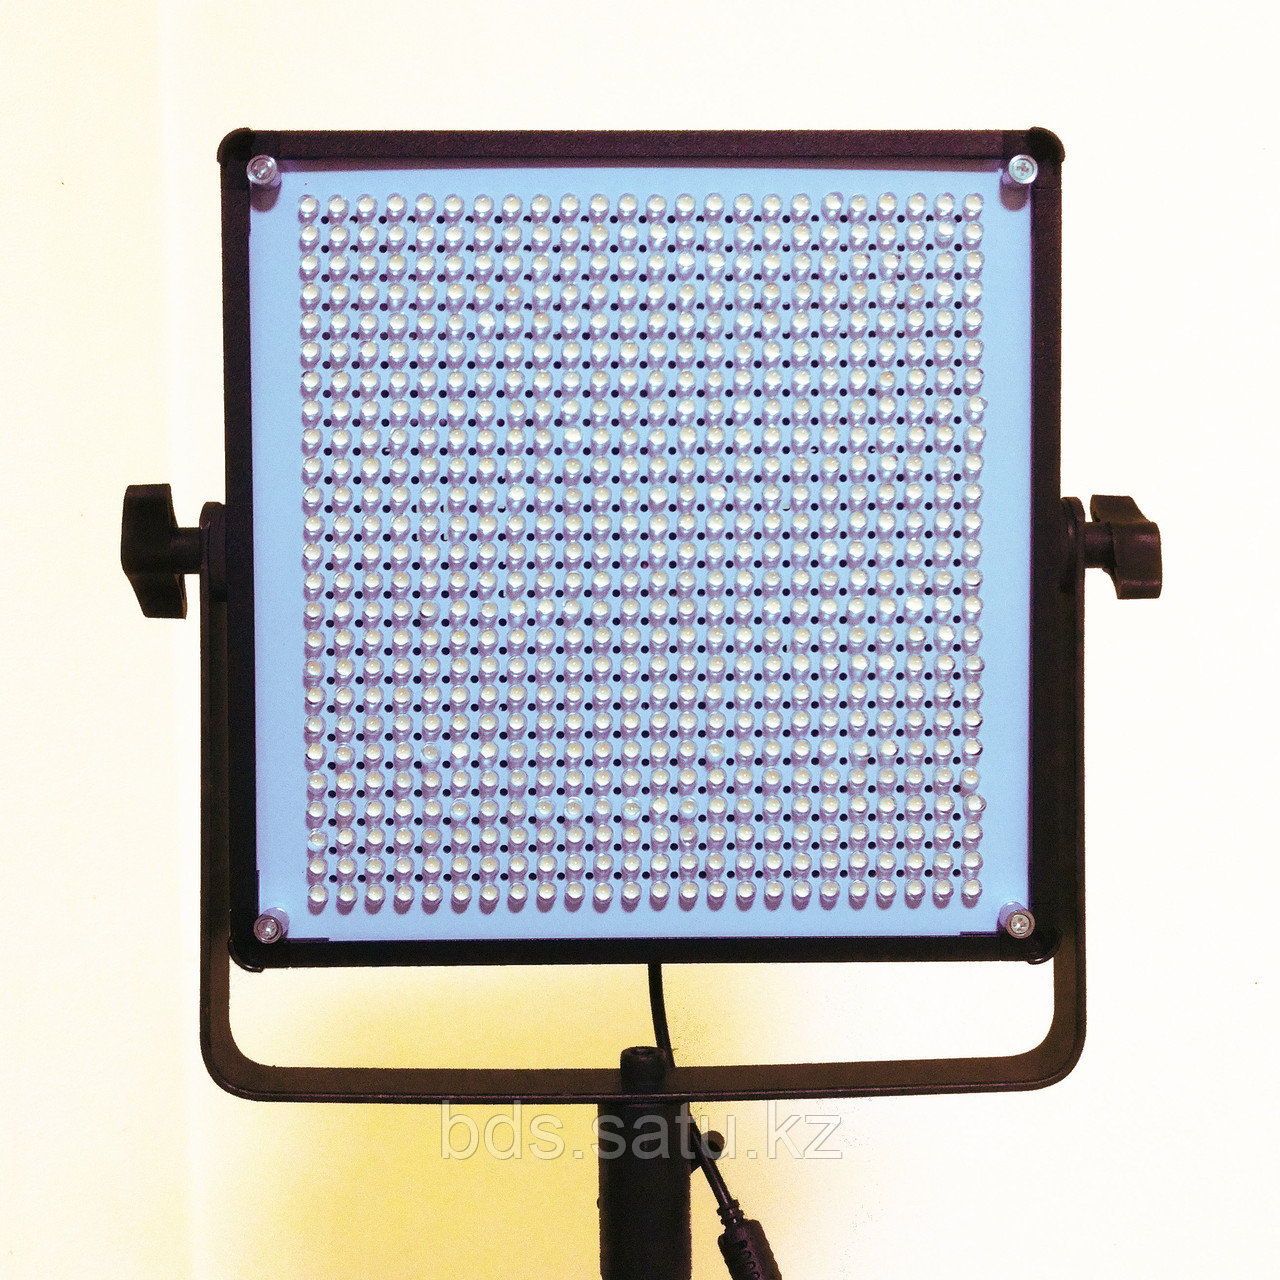 Студийный источник постоянного света LED600DS (600 светодиодов)